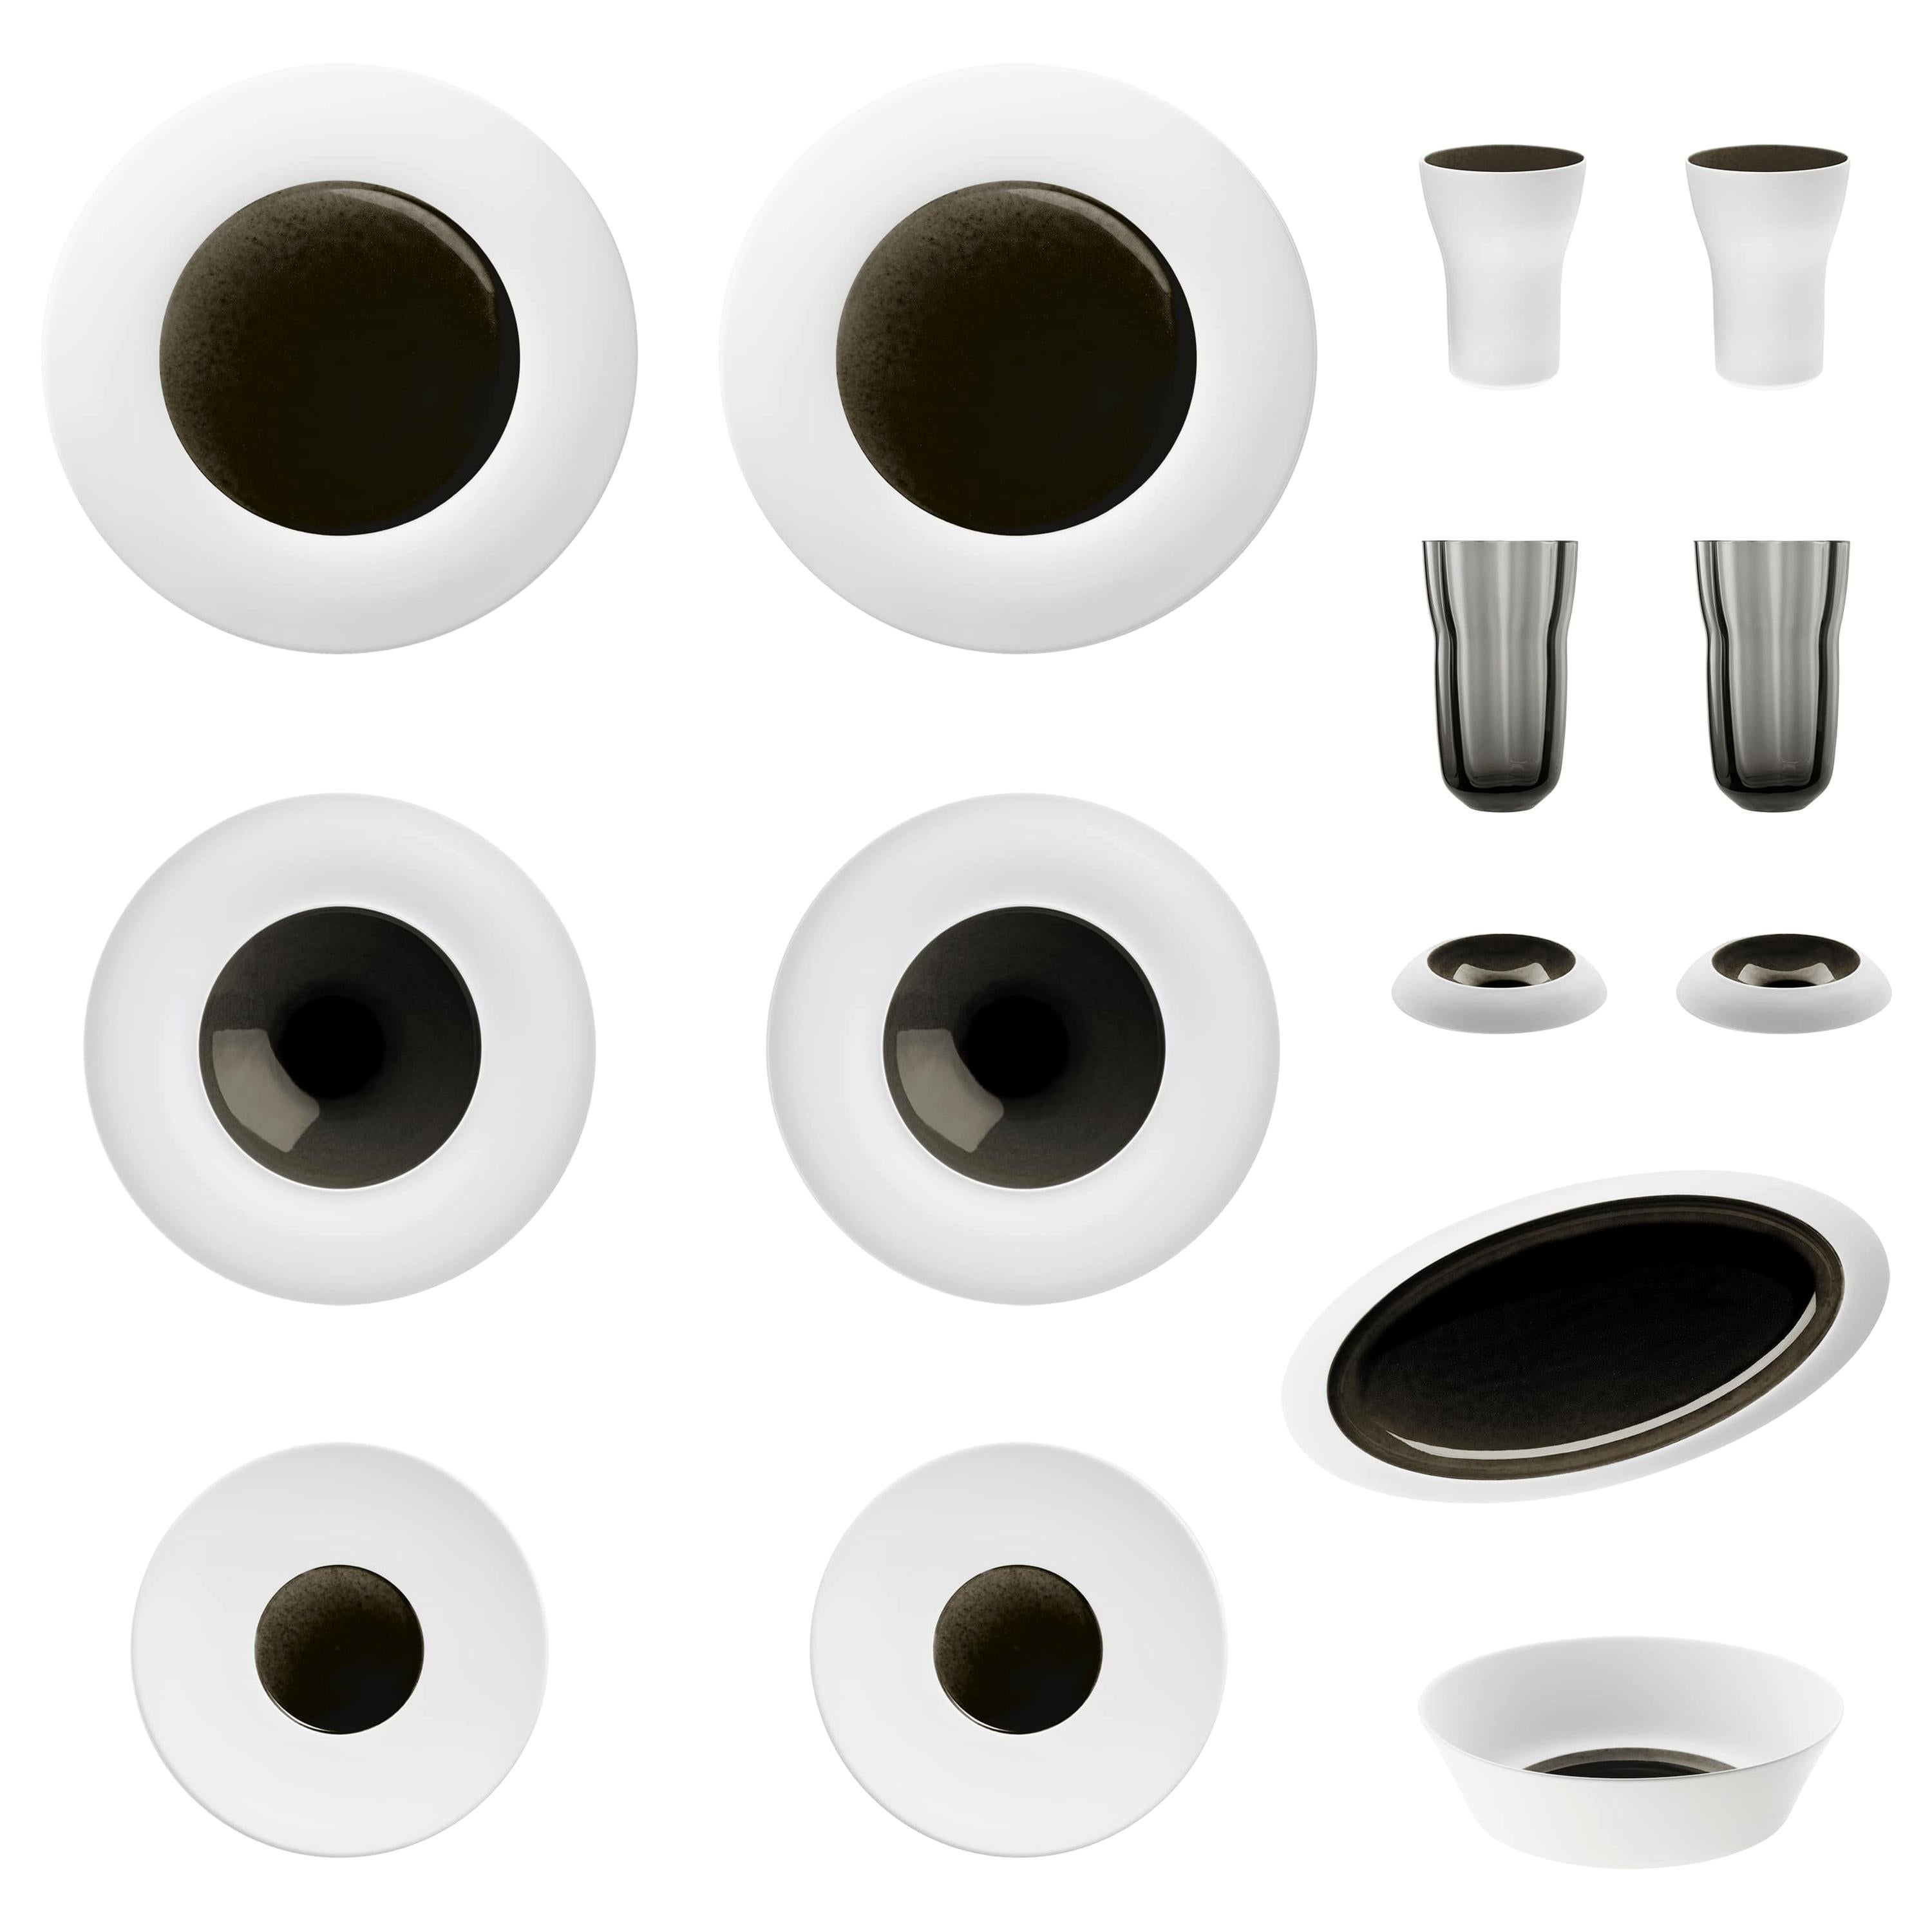 "Obsidian" Set of Biscuit Porcelain with Hand-Poured Black Glaze, Hering Berlin